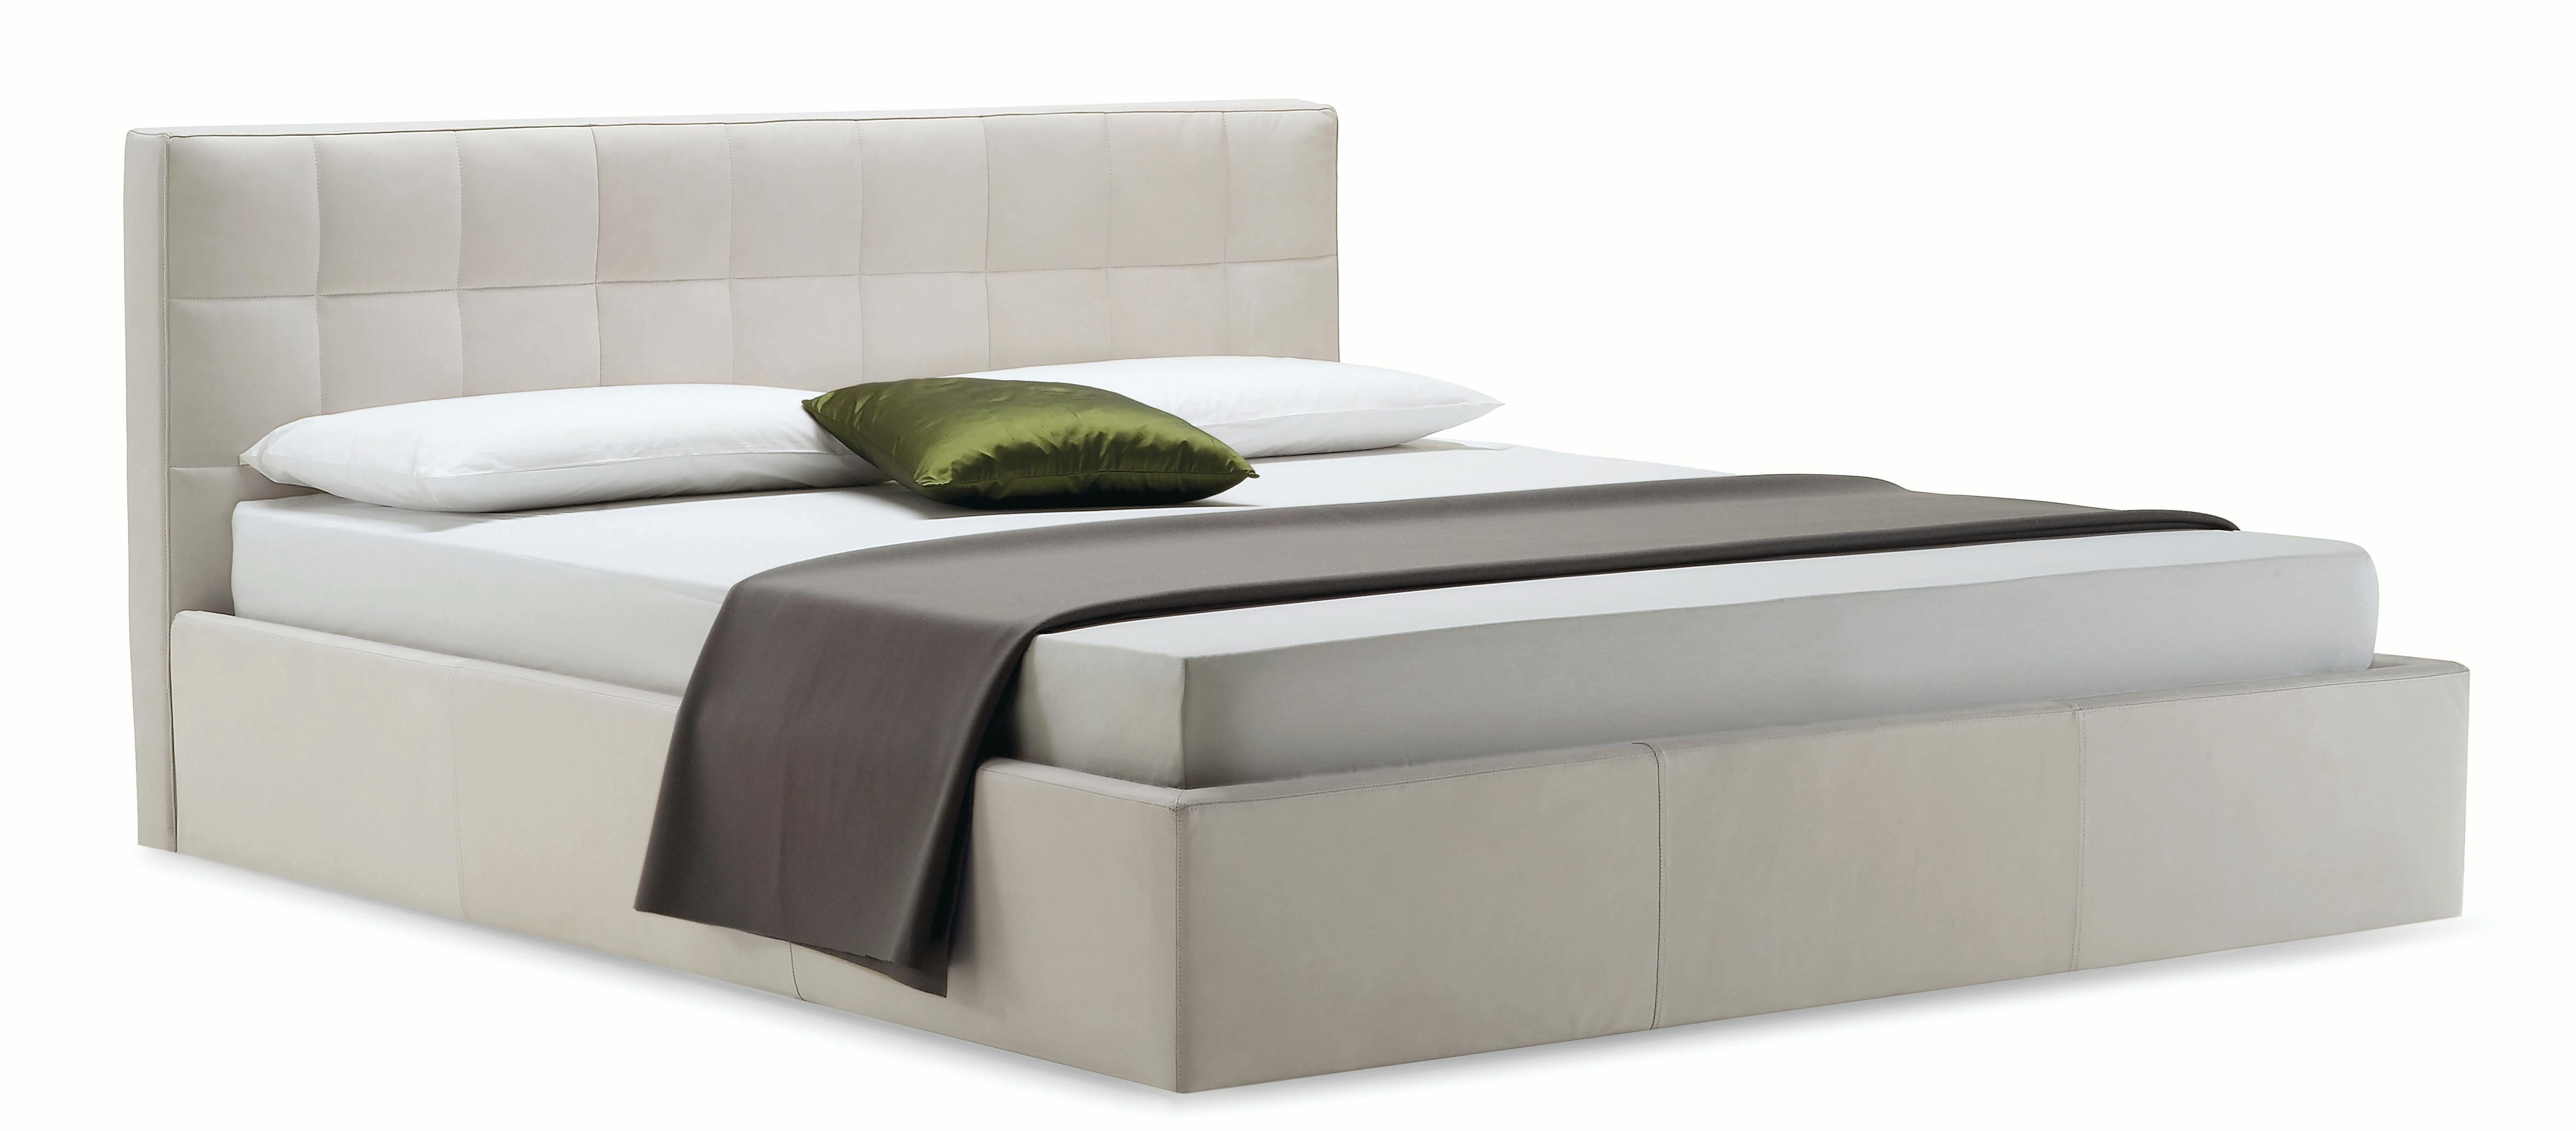 Zanotta King Size Box Bed with Container Unit in White Upholstery & Steel Frame by Emaf Progetti

Lit avec unité de conteneur. Cadre en acier, aluminium verni. Suspension en lamelles de hêtre courbé naturel, avec réglage de la rigidité, insérées